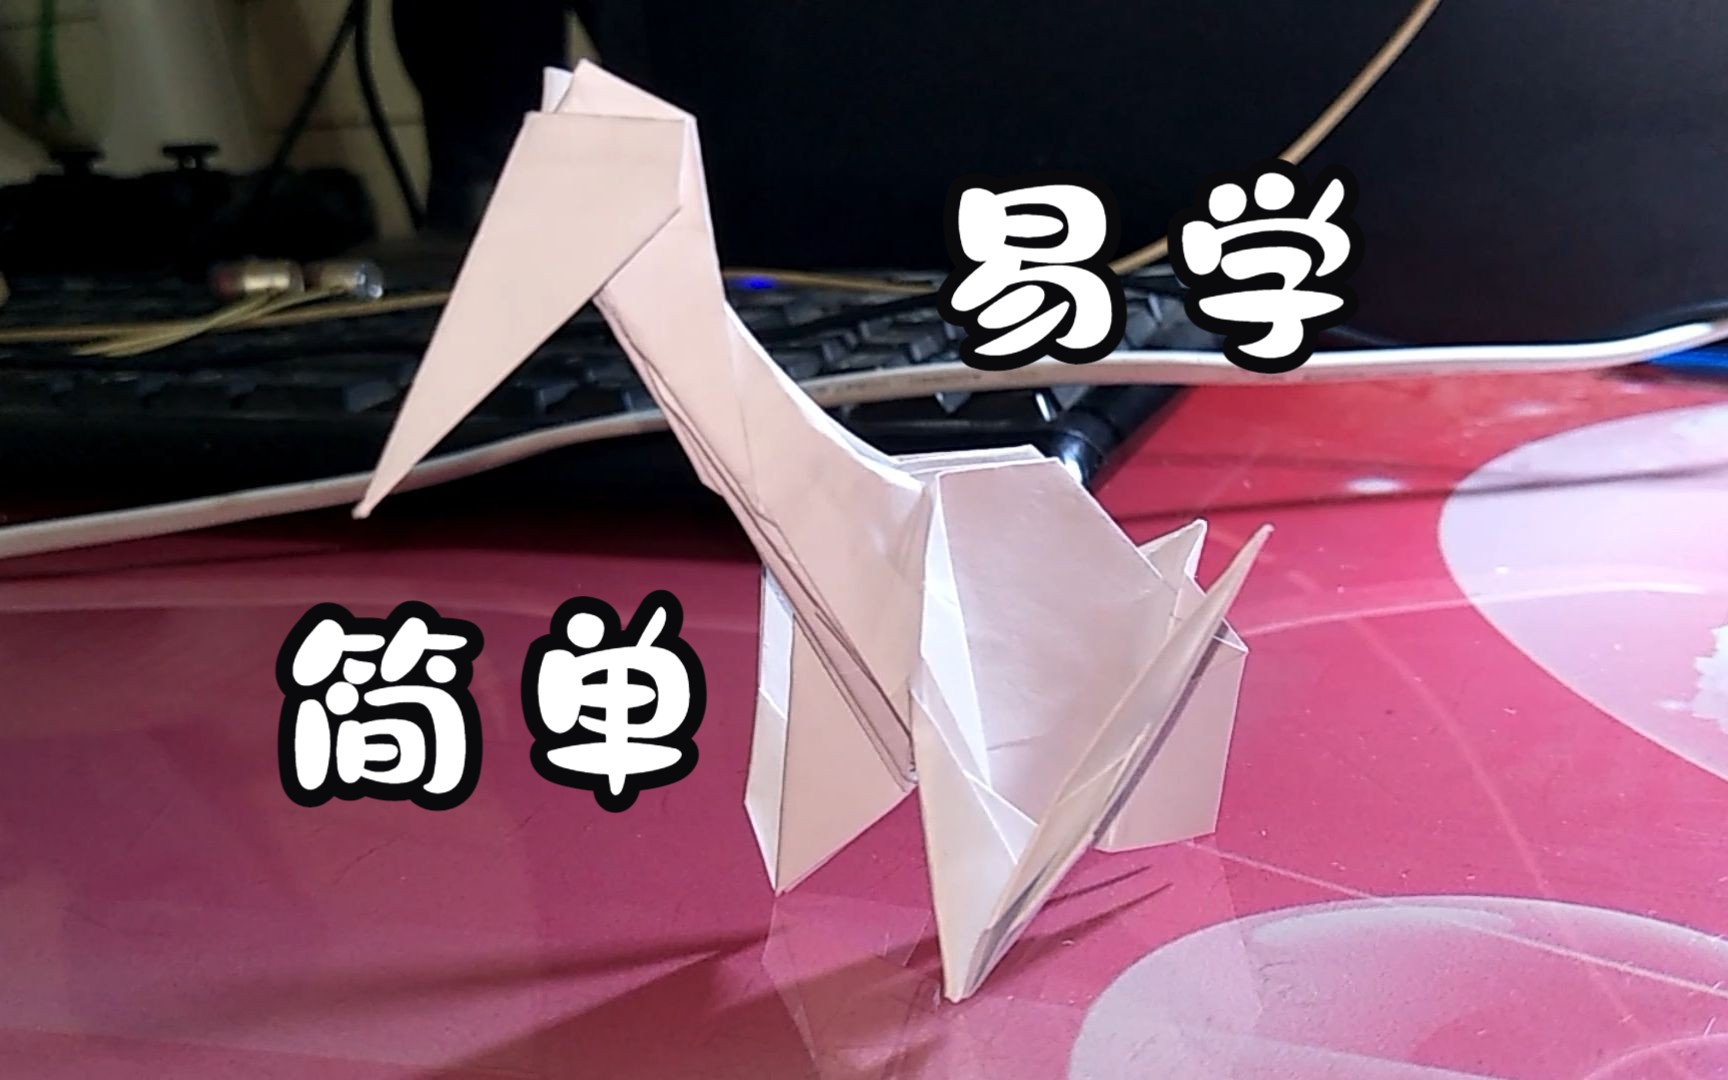 折风神翼龙的折纸方法图片